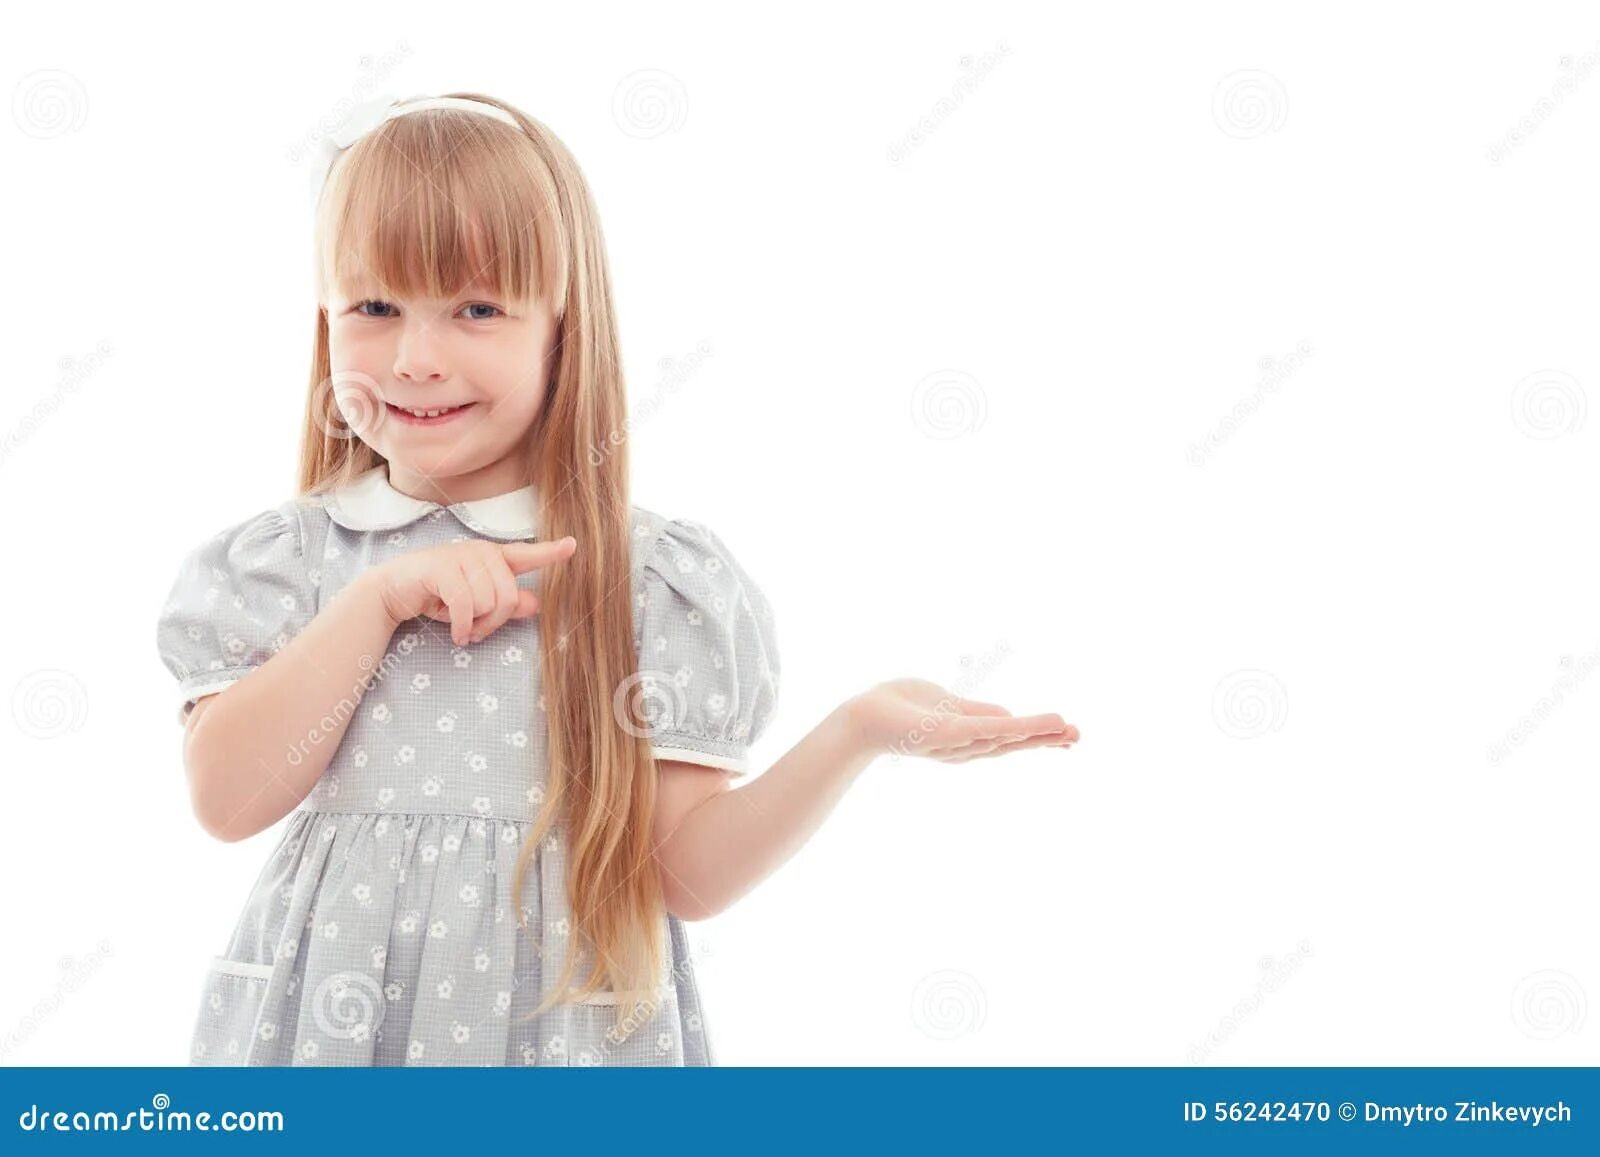 Маленькая угрожала. Девочка показывает пальцем. Девочка держит в руках. Ребенок указывает. Девушка указывает рукой.